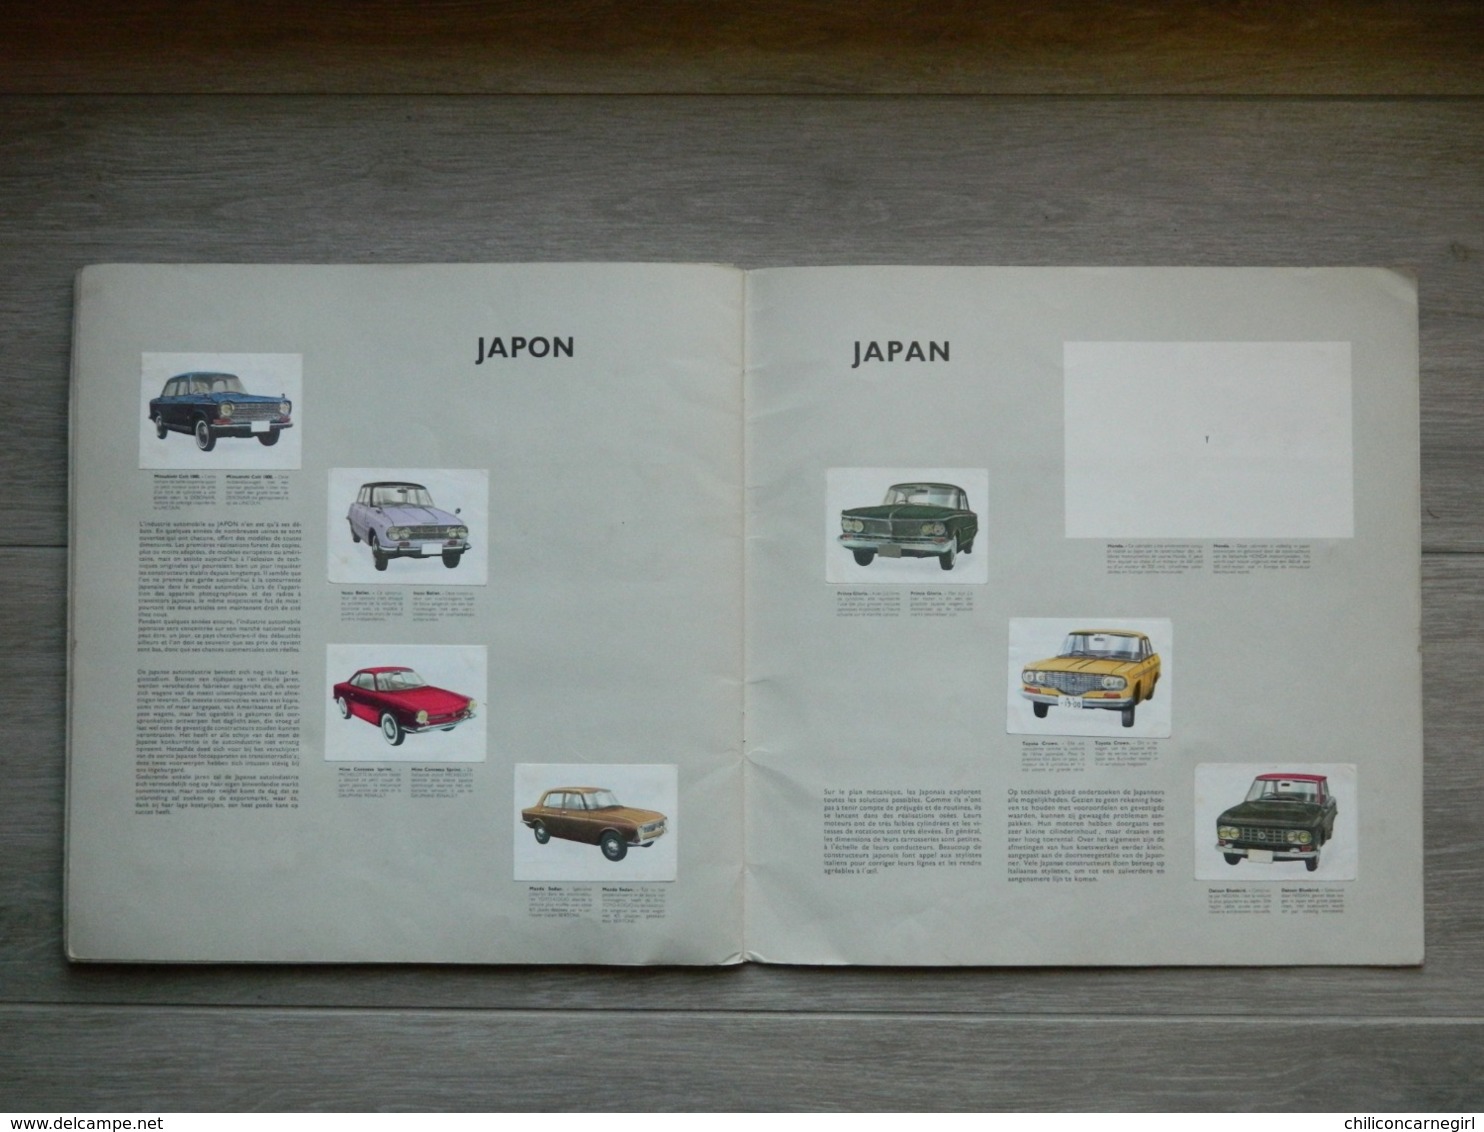 Album JACQUES - De auto's in de wereld - Les autos dans le monde 1964 - Ford - Ferrari - Citroen - Simca - Volkswagen